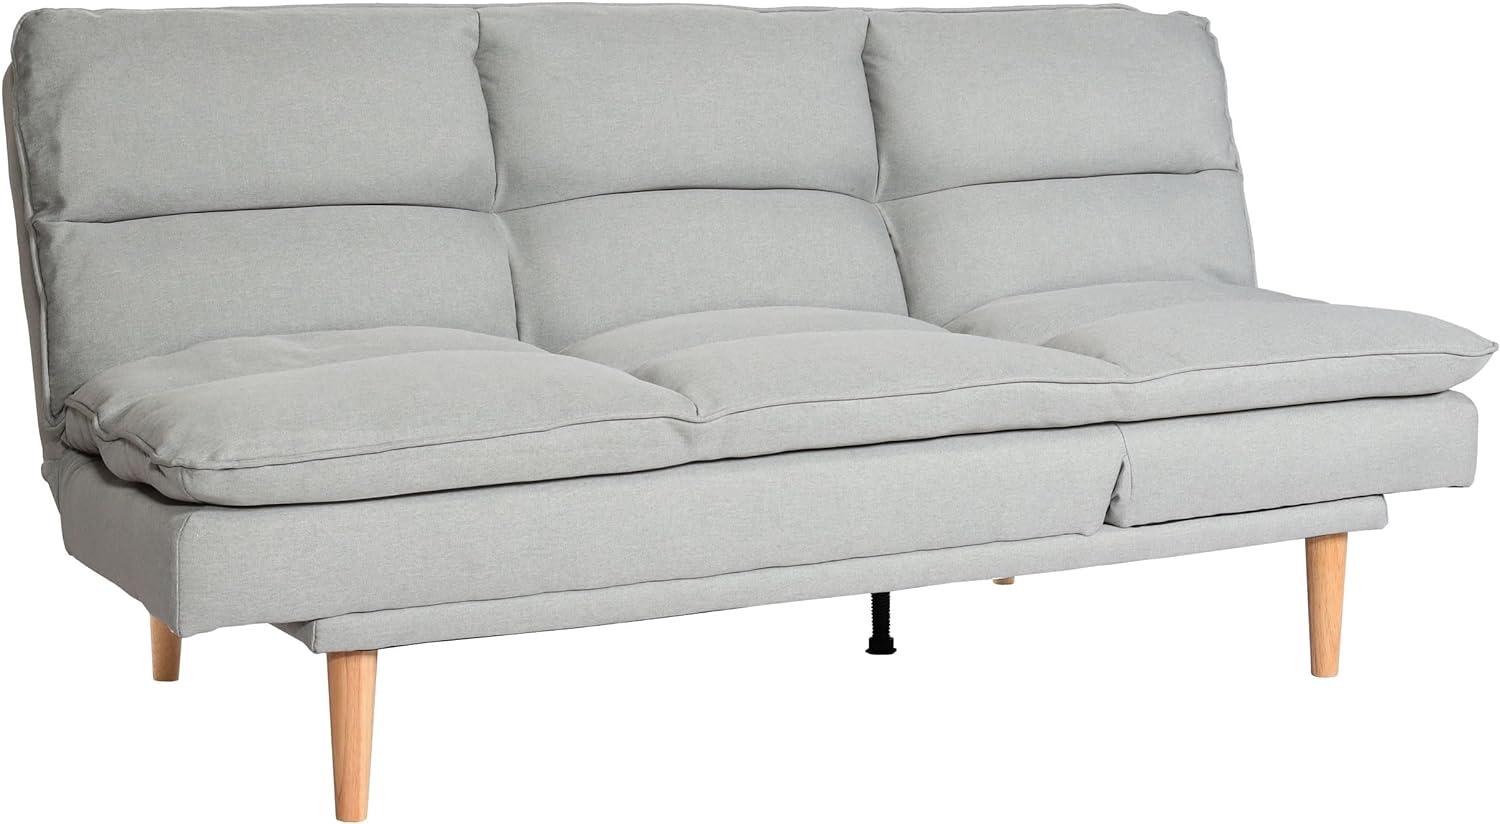 Schlafsofa HWC-M79, Gästebett Schlafcouch Couch Sofa, Schlaffunktion Liegefläche 180x110cm ~ Stoff/Textil mint-grau Bild 1